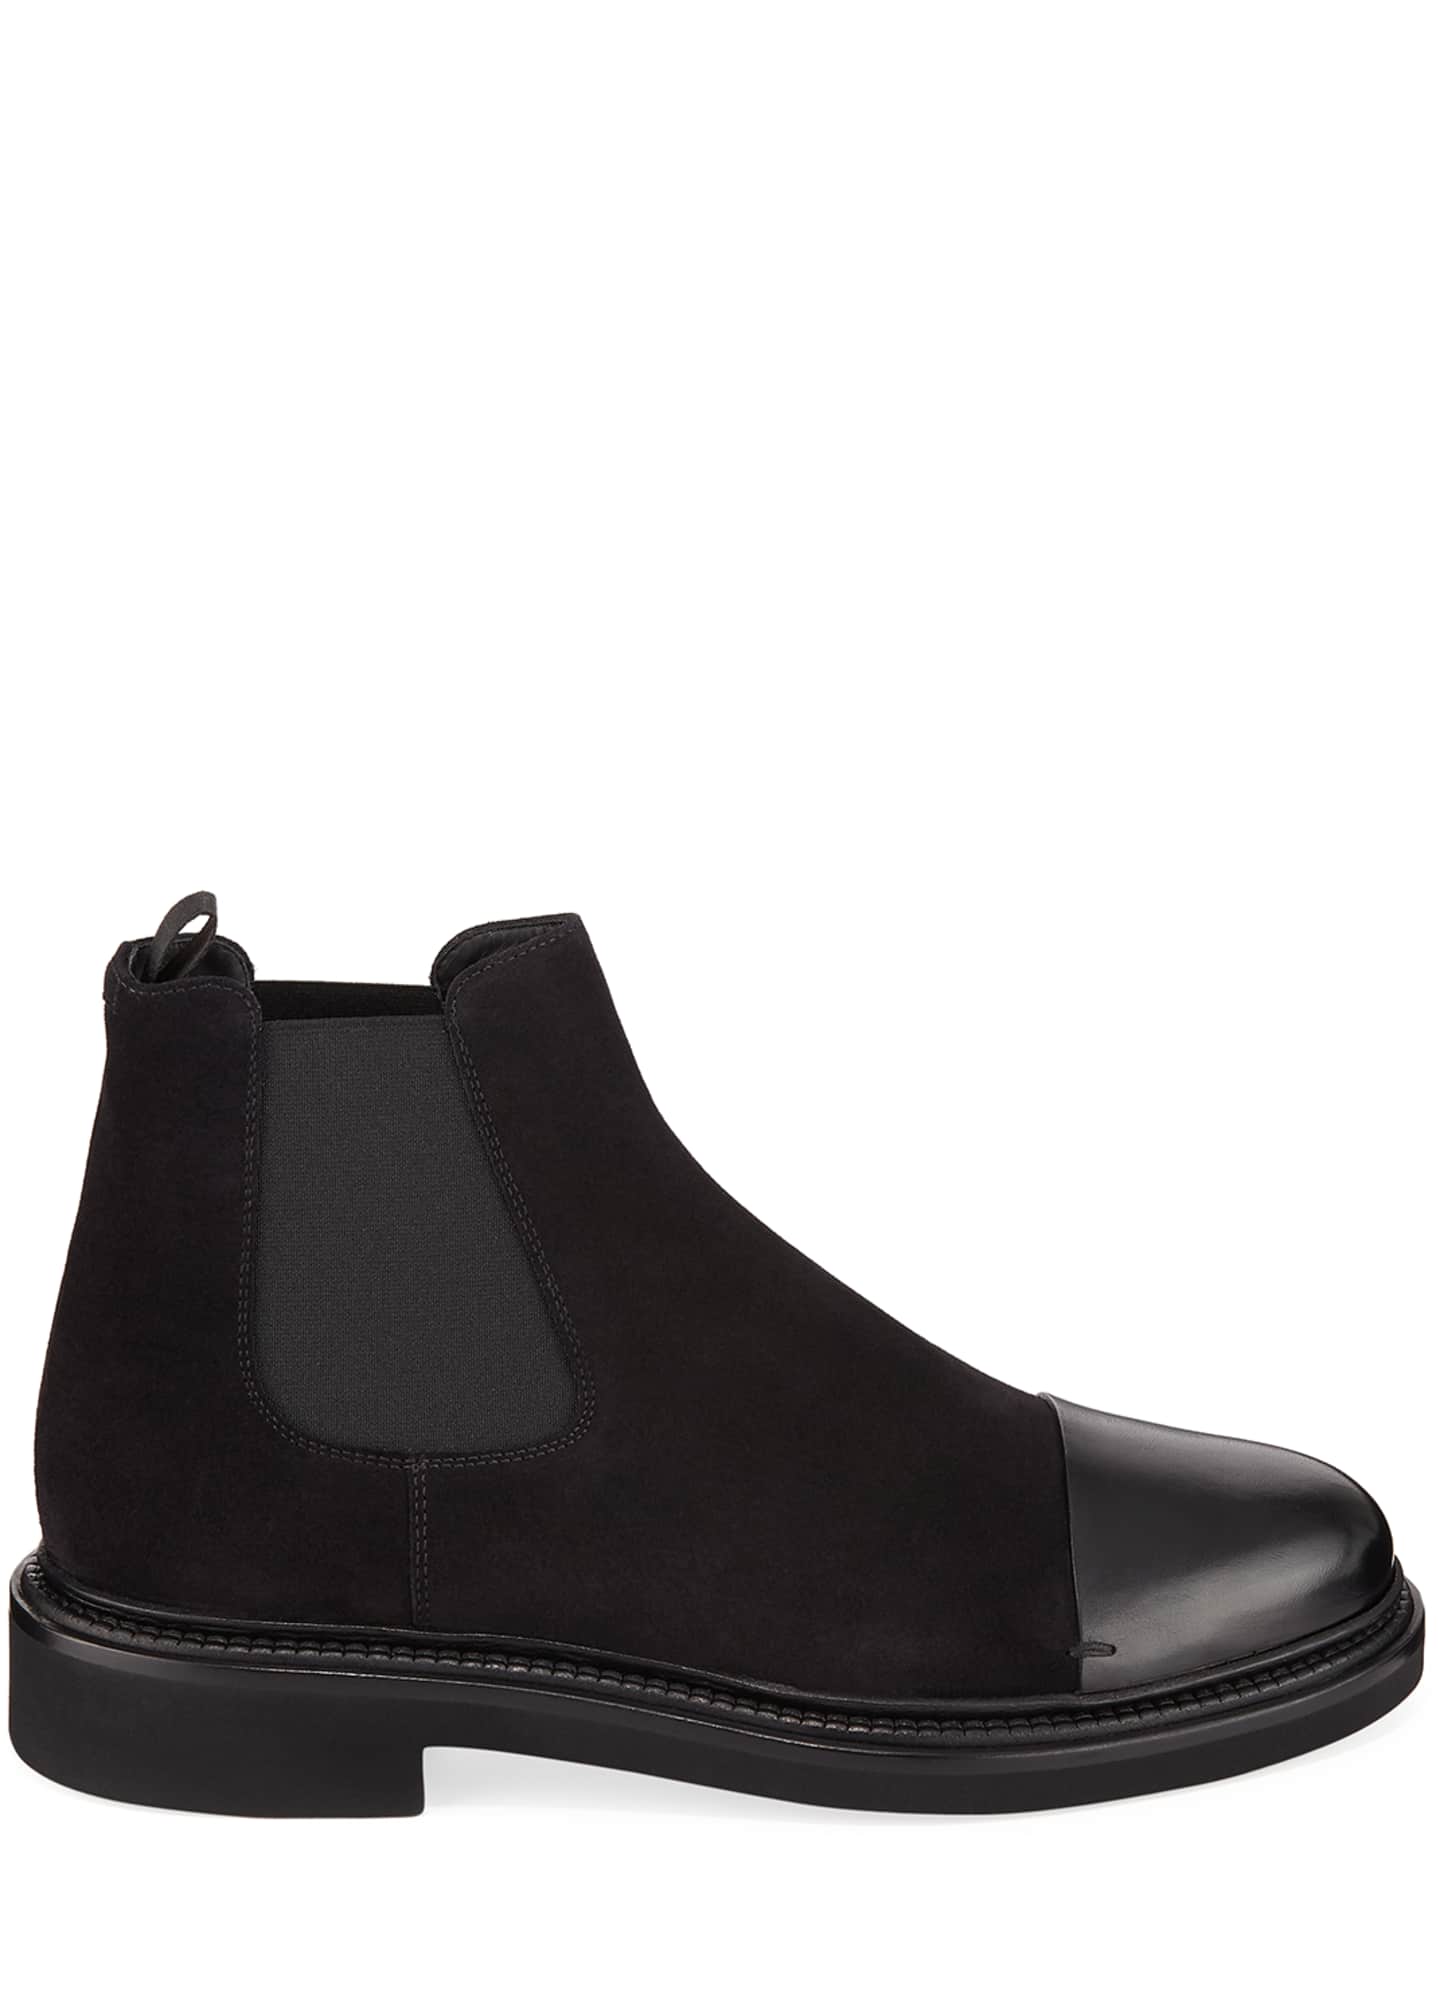 Giorgio Armani Men's Vachetta Leather/Suede Chelsea Boots - Bergdorf ...